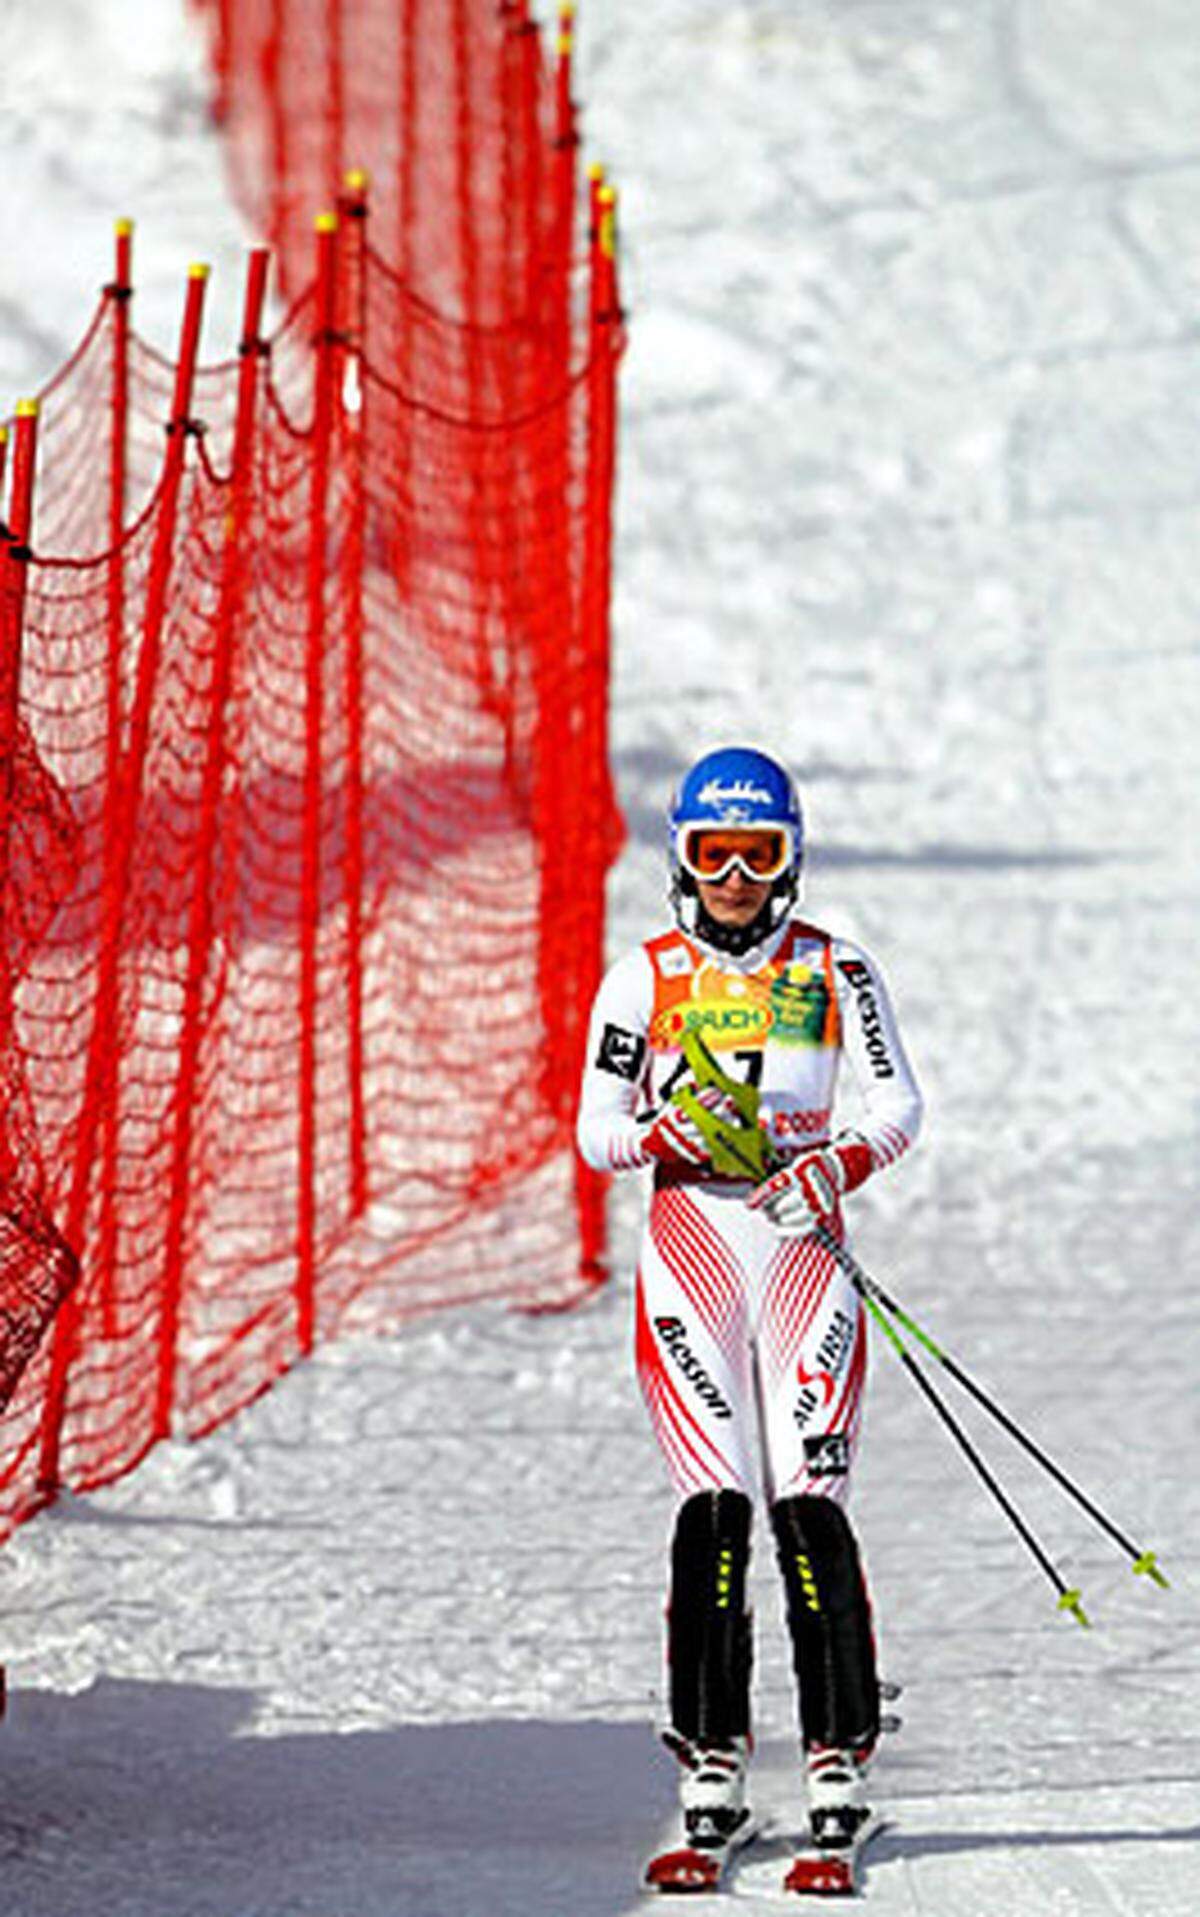 Ganz bitter sollte es für Österreichs Damen kommen. Unmittelbar nach Riesch ging die größte ÖSV-Medaillenhoffnung Kathrin Zettel ins Rennen. Die Kombi-Weltmeisterin 2009 fiel jedoch schon nach wenigen Fahrsekunden aus.